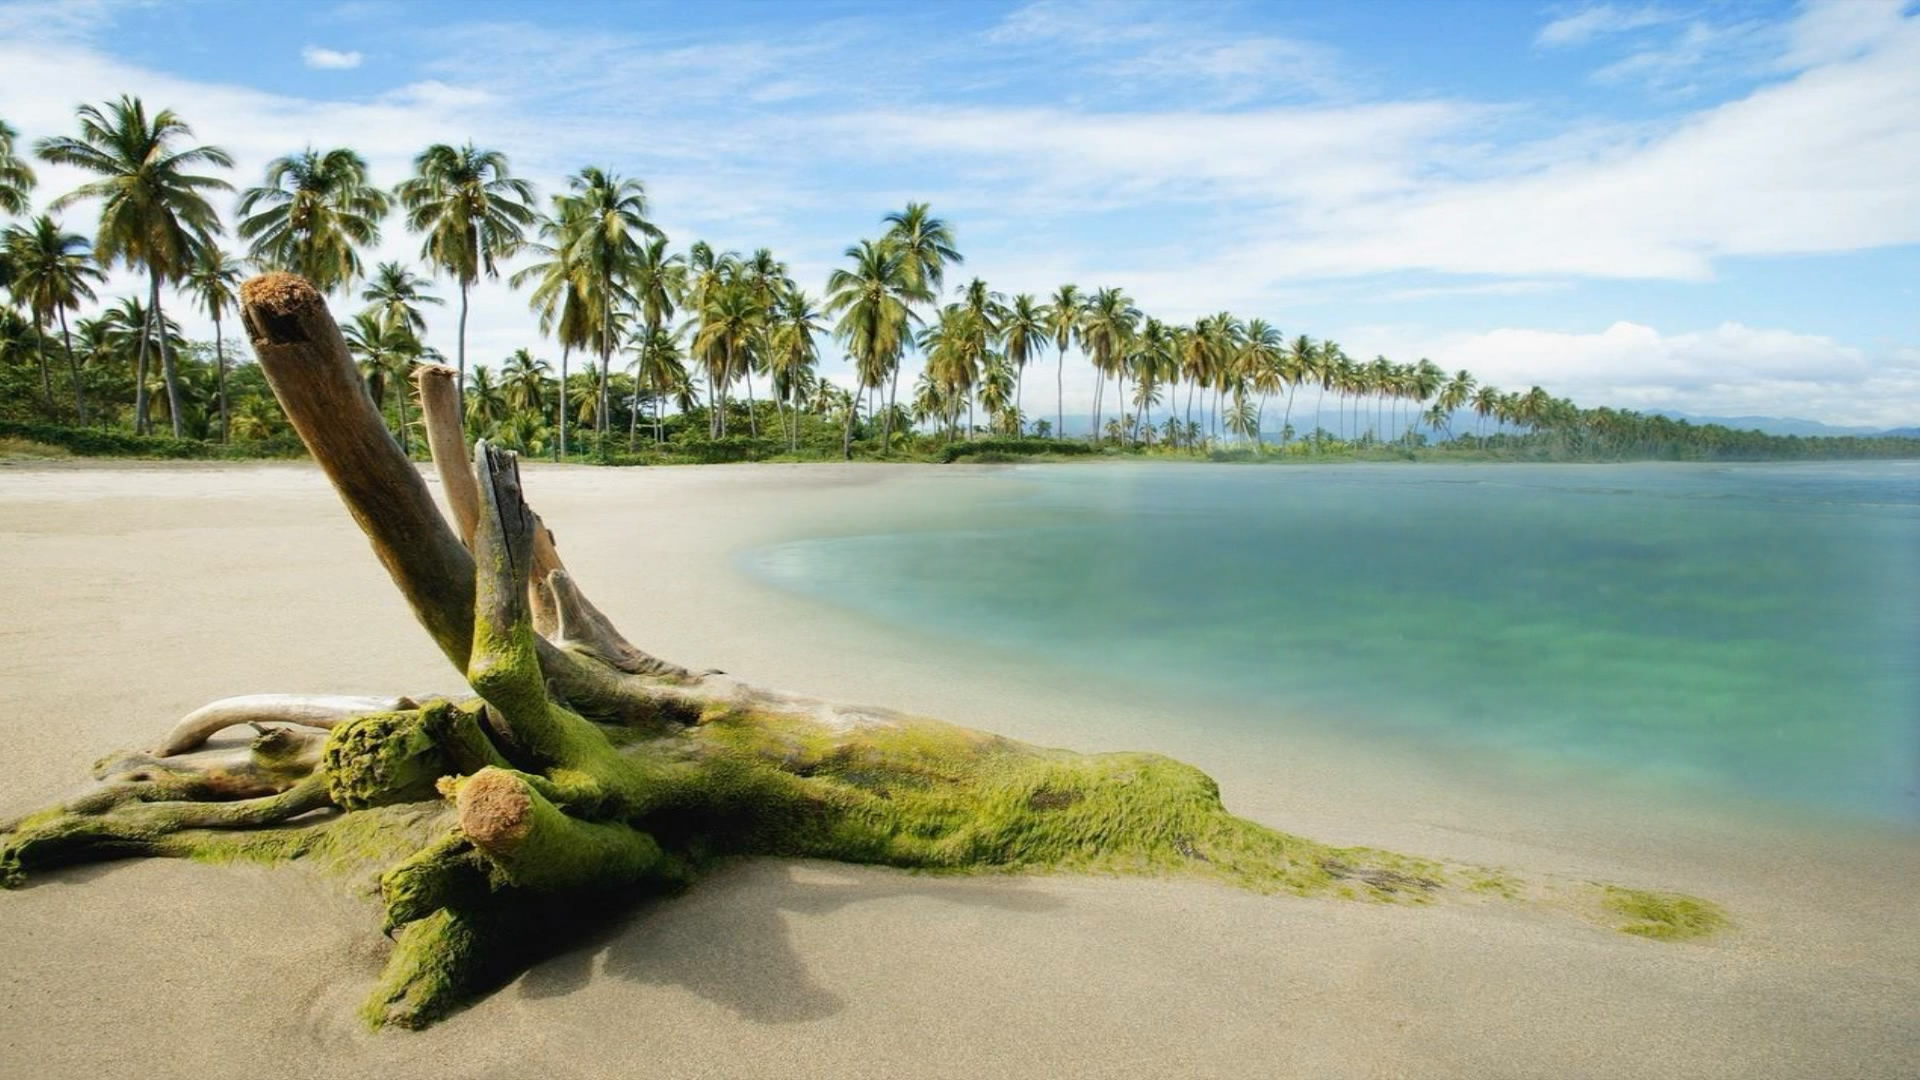 naturaleza fondos de pantalla hd descarga gratuita,naturaleza,apuntalar,árbol,paisaje natural,caribe